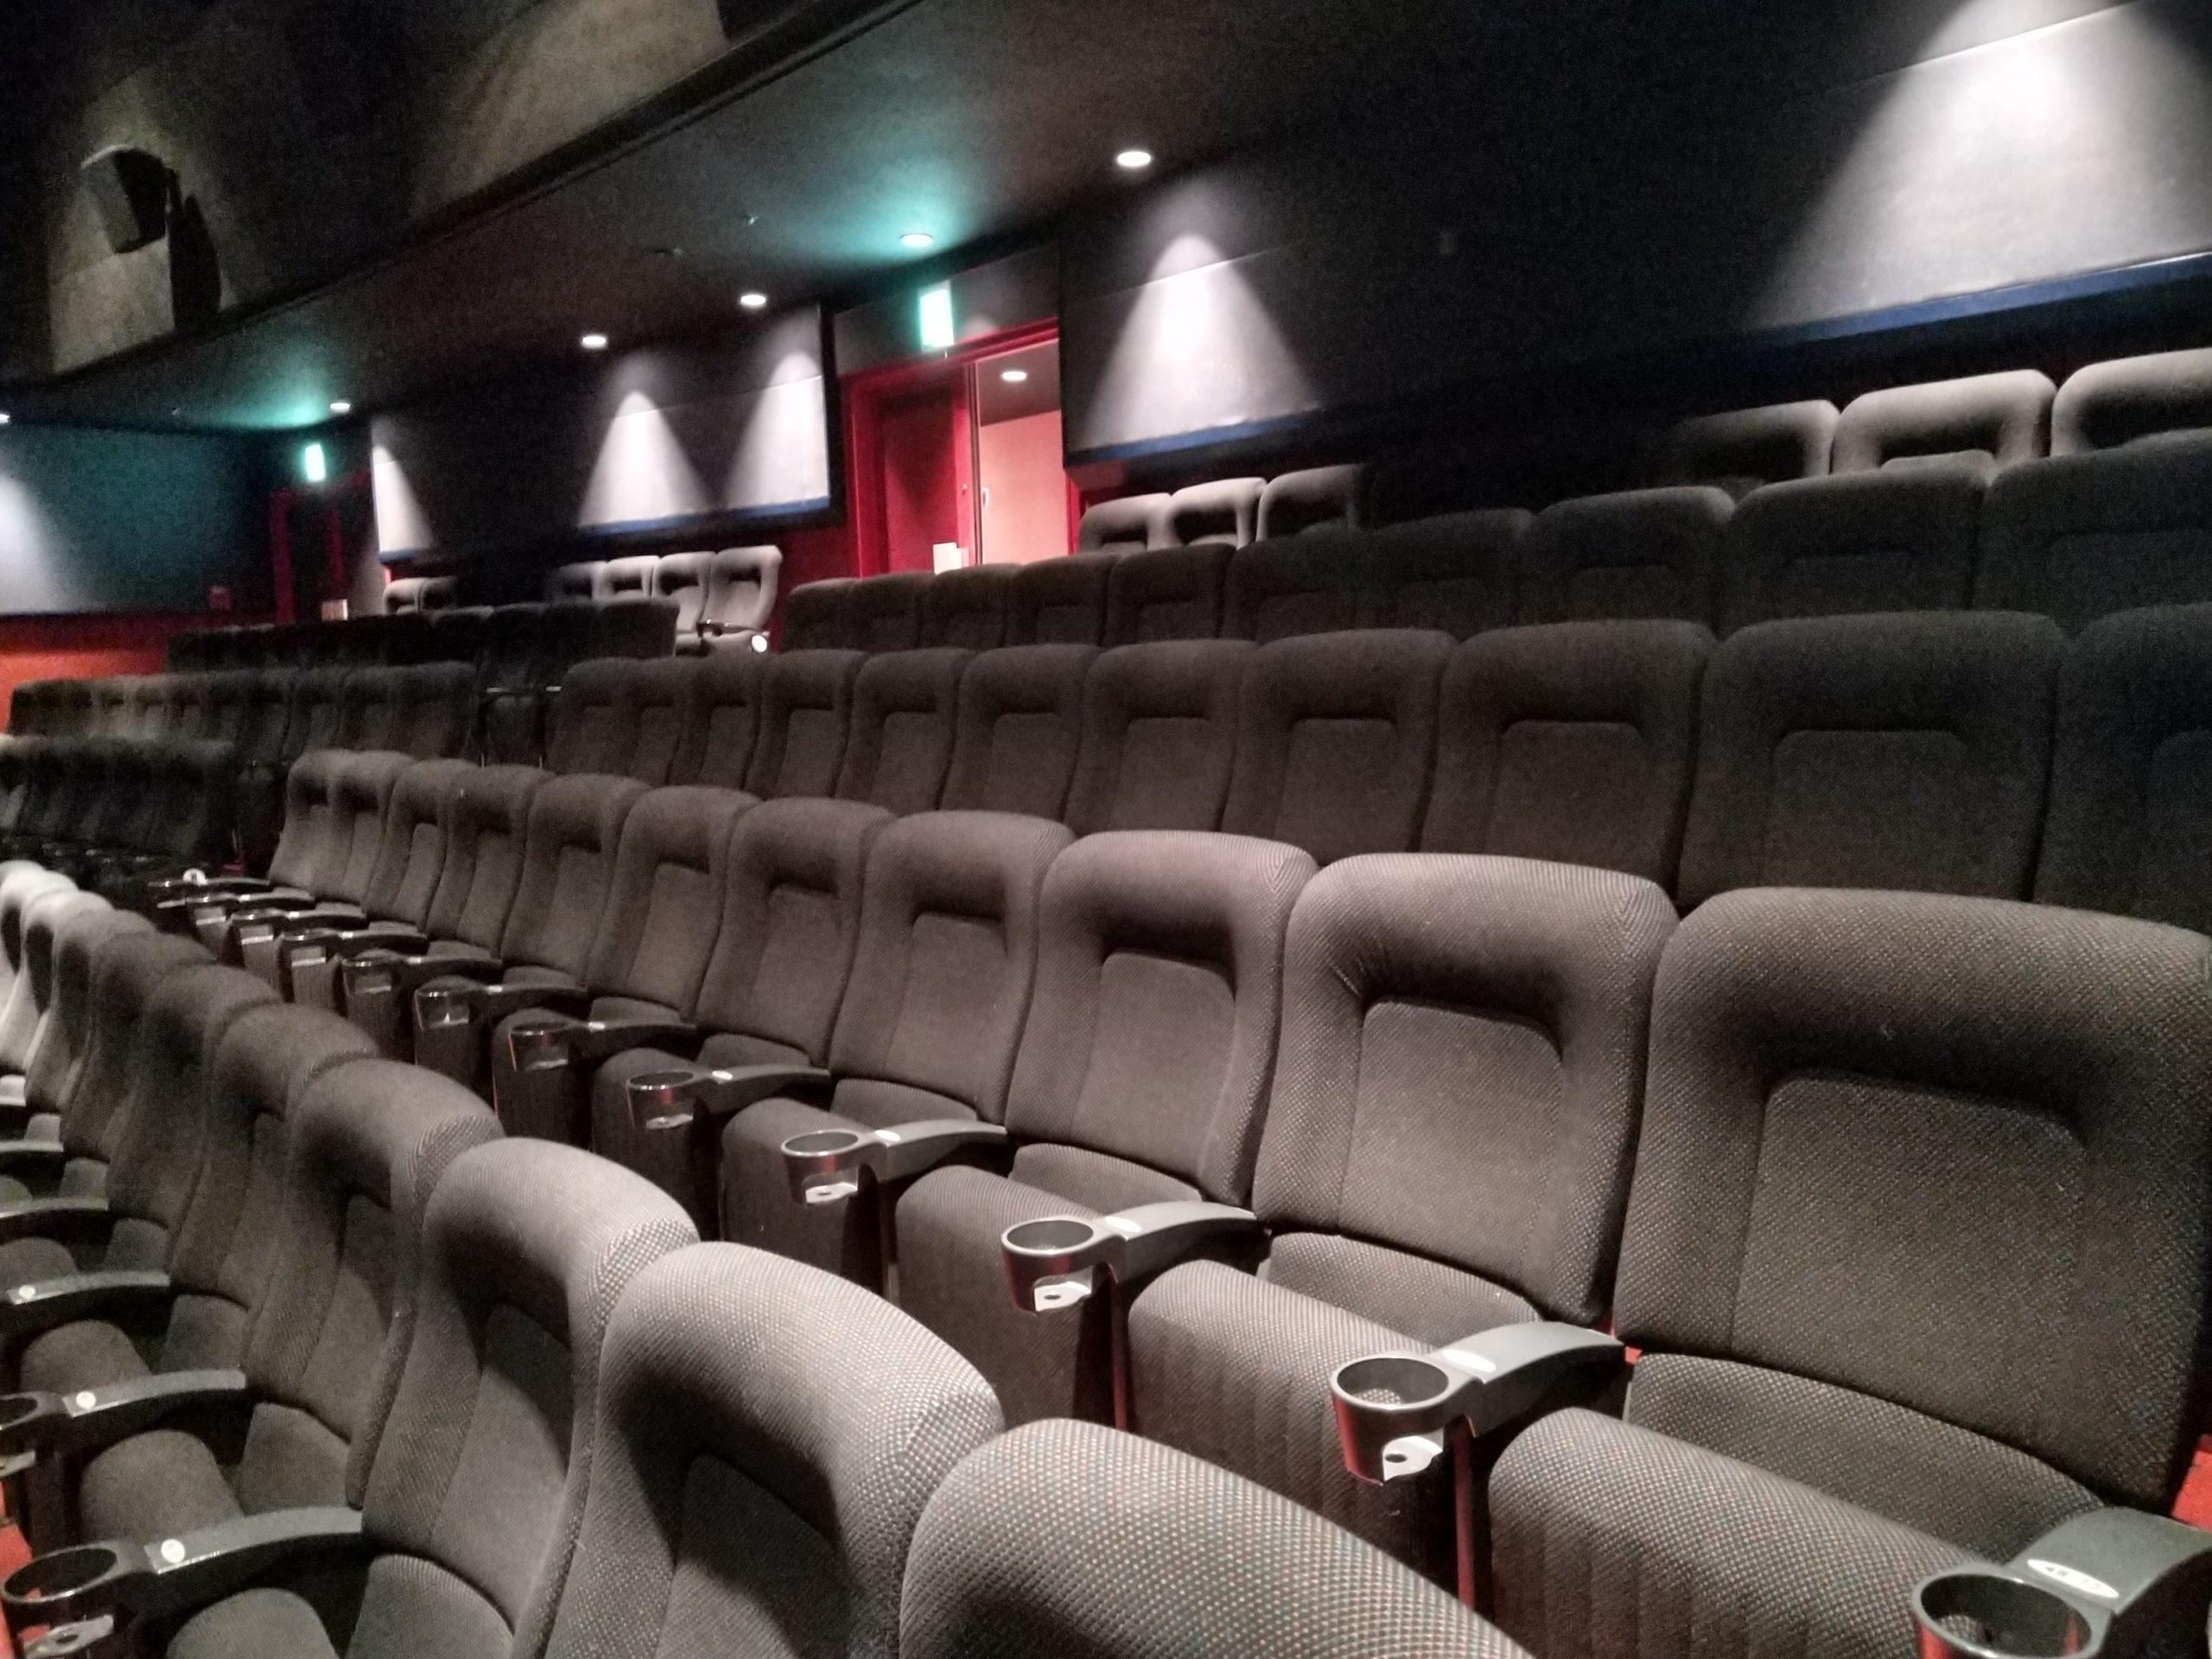 体験談 丸の内ピカデリー1のおすすめ座席は二階席 見え方もご紹介 キネマフリーク 映画産業を盛り上げる映画館ブログ